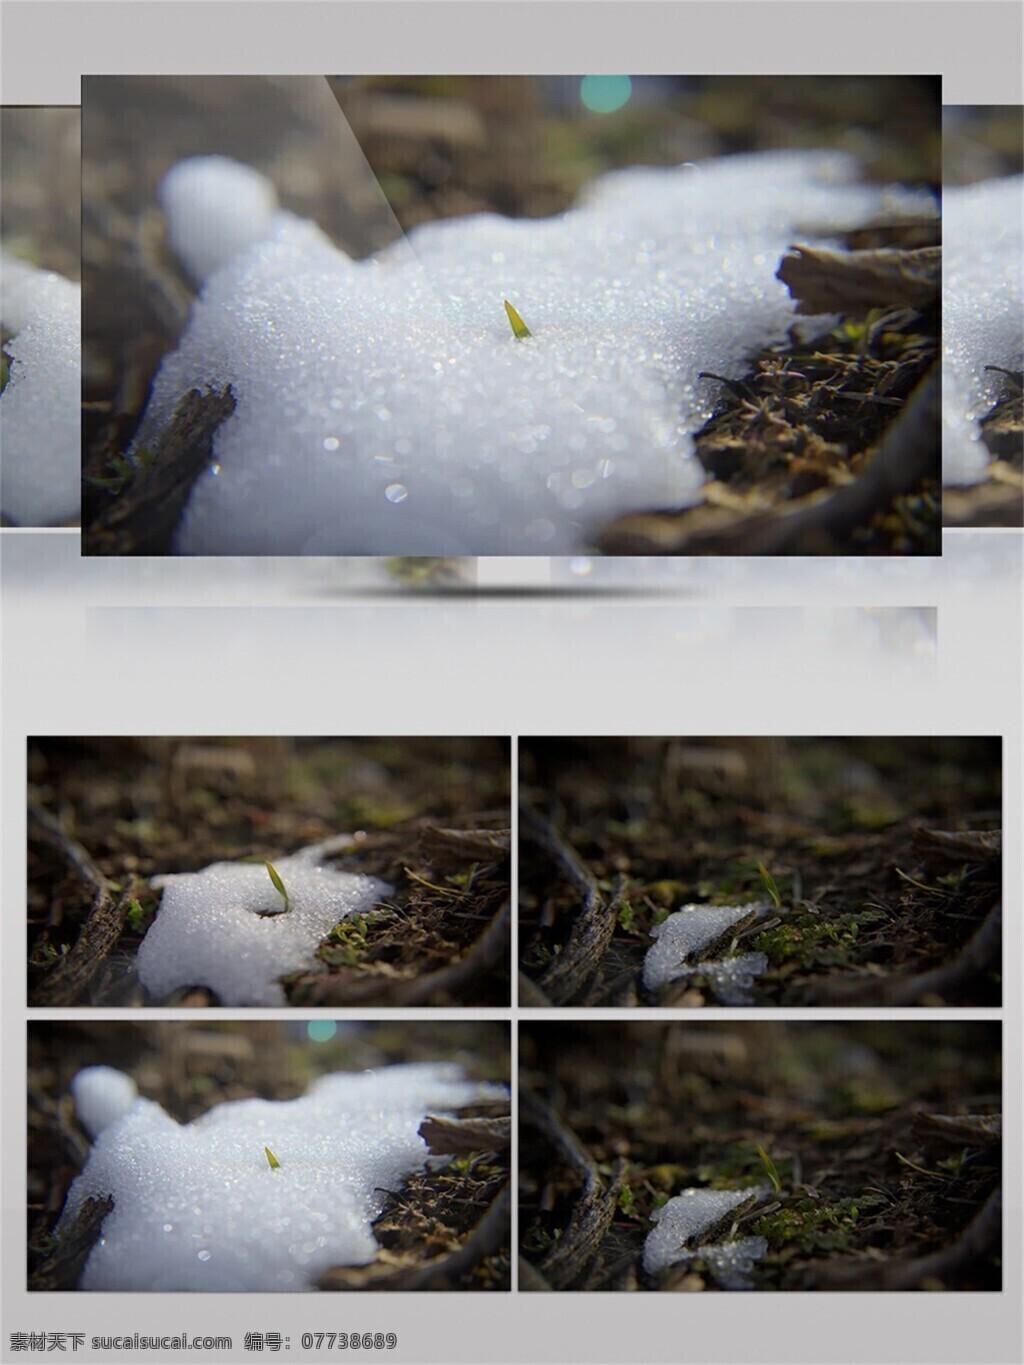 早晨 冰雪 融化 视频 冬天 植物 小草 树藤 冬季 白雪 寒冷 雪水 空气